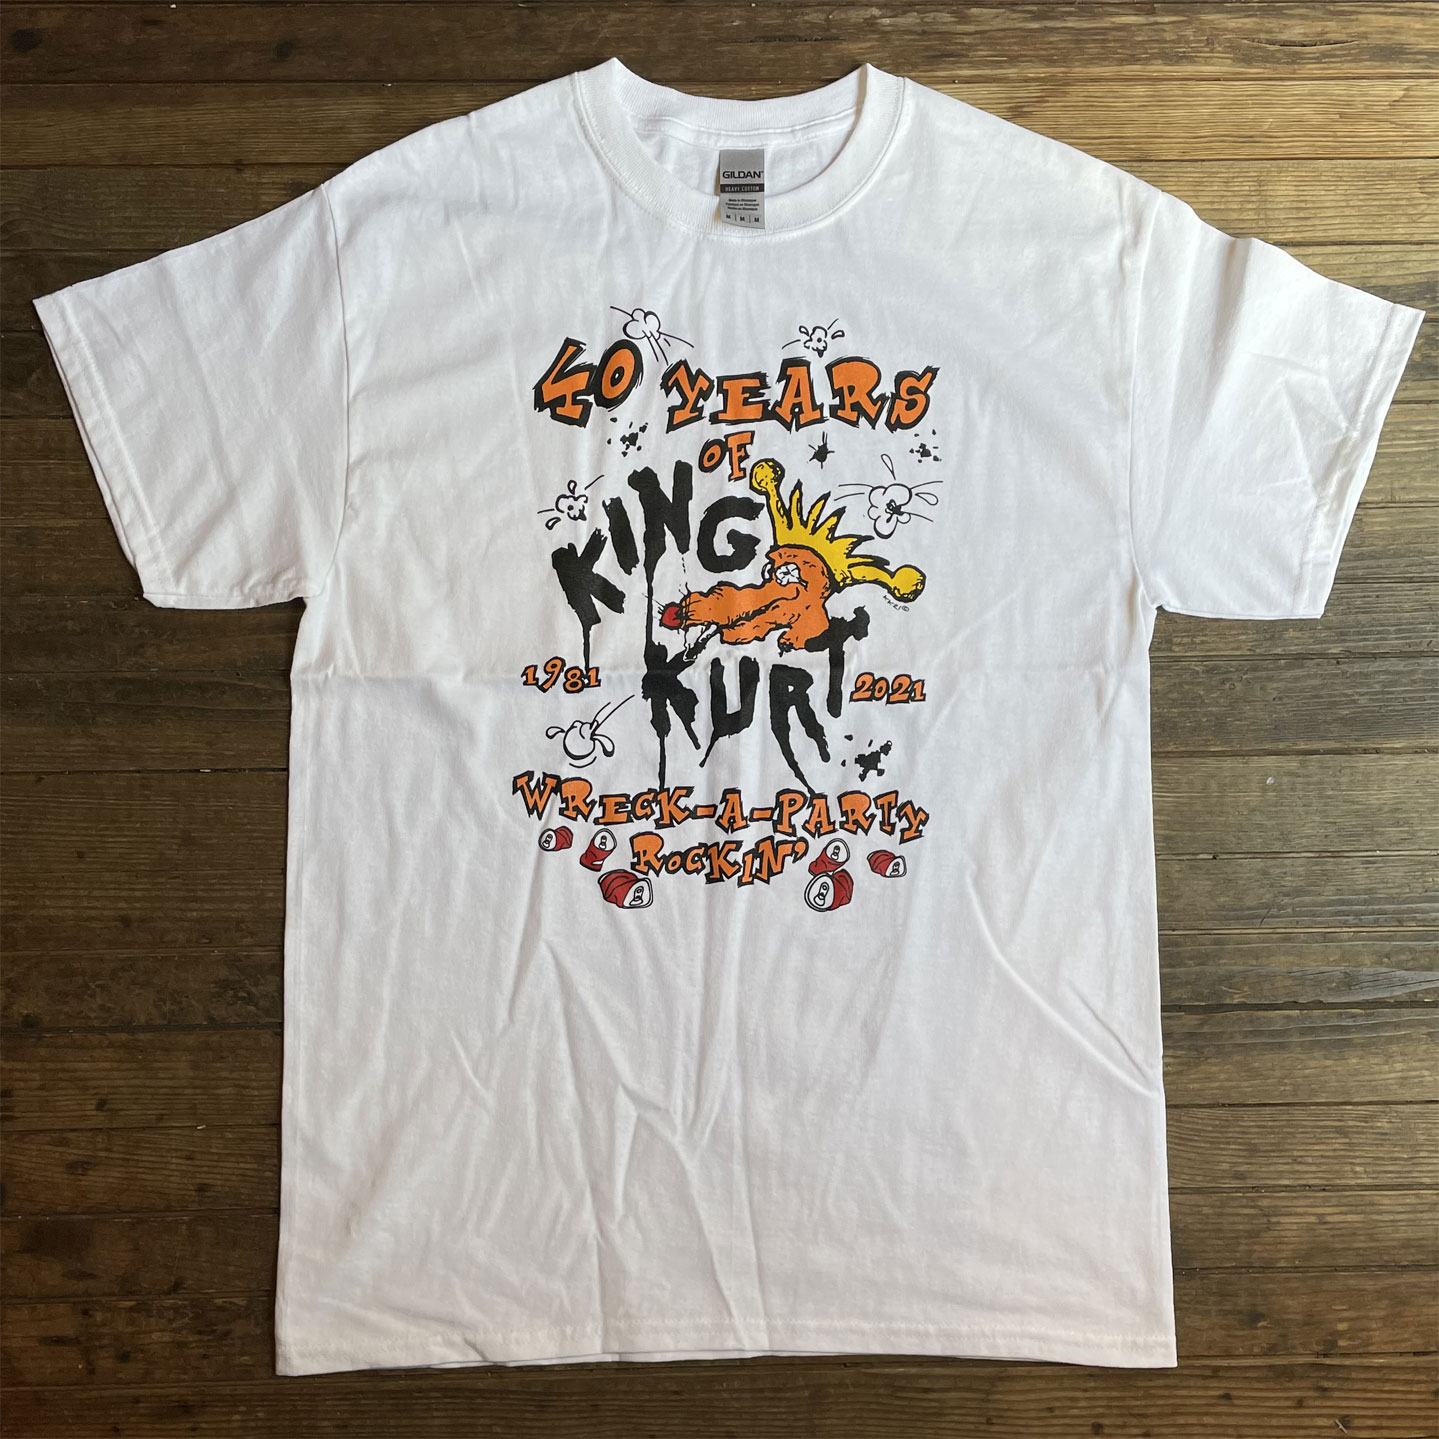 KING KURT Tシャツ 40YEARS オフィシャル